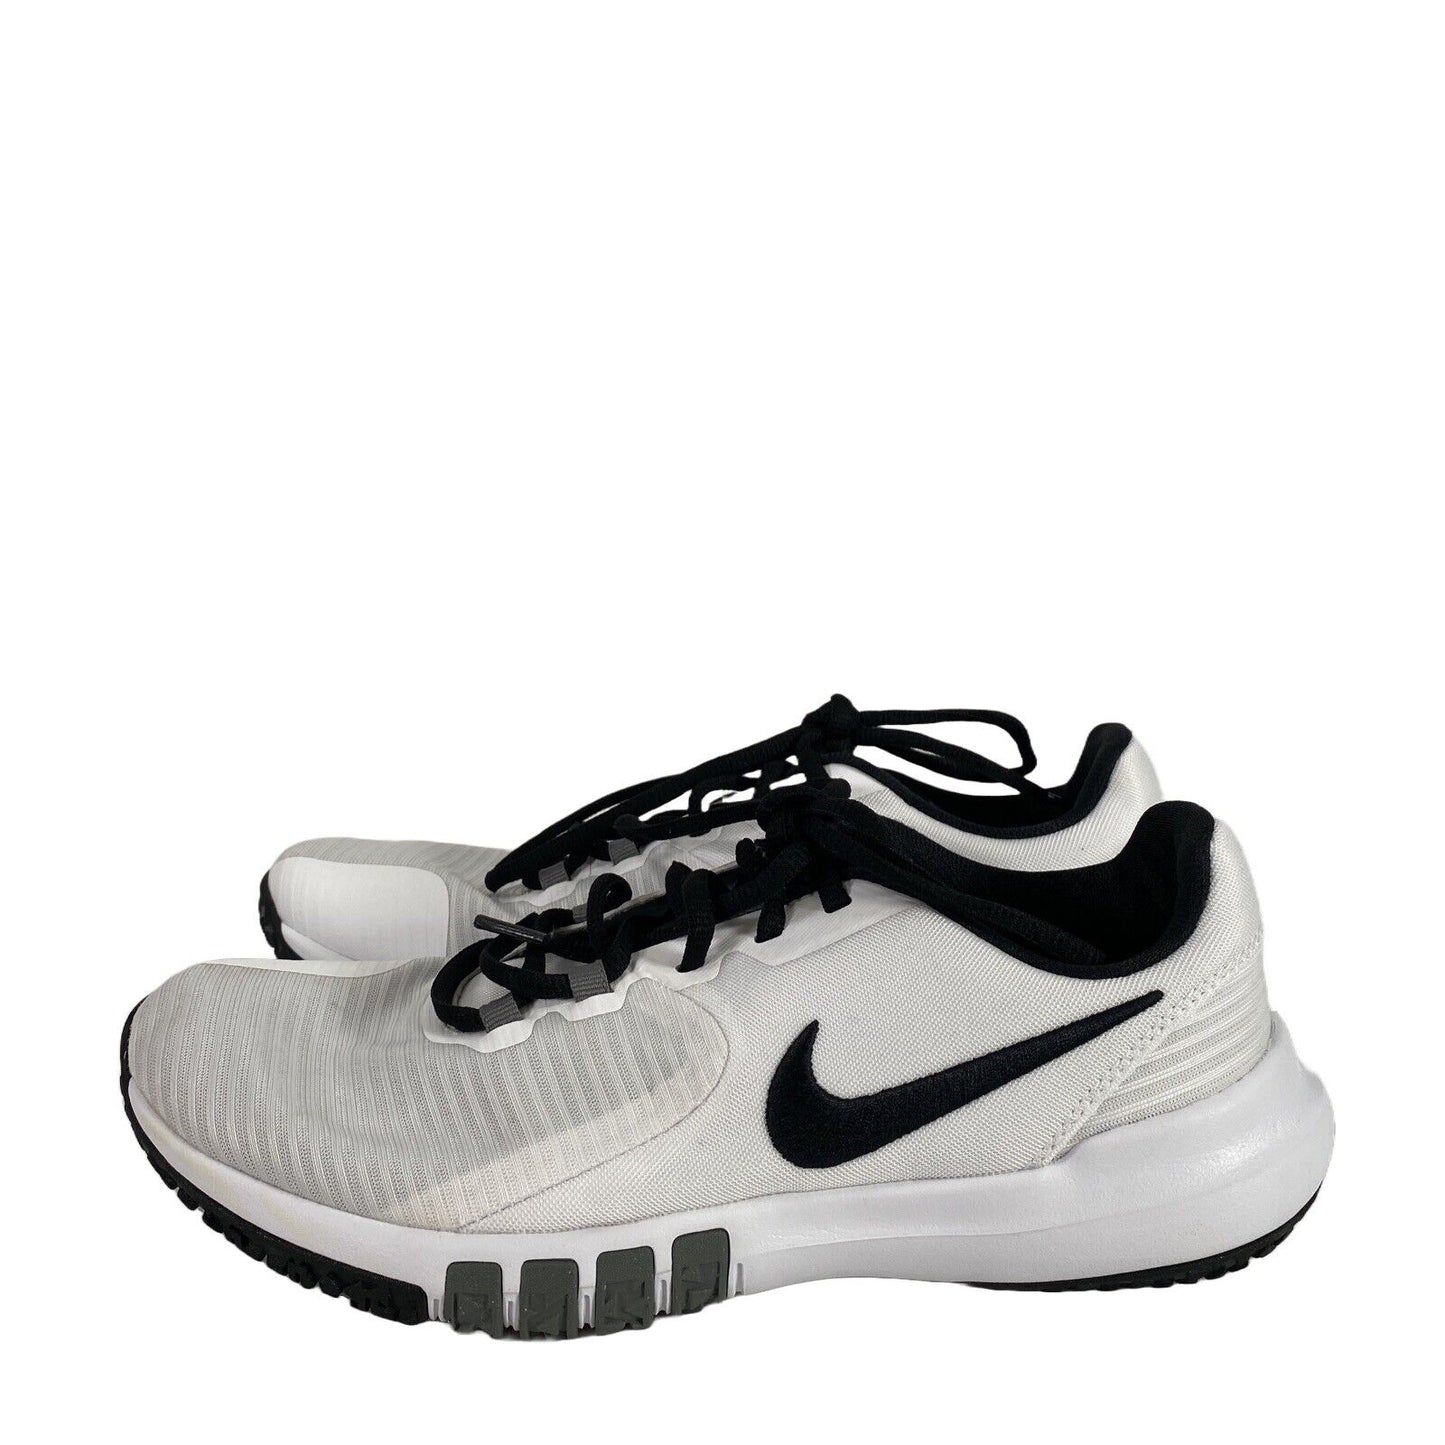 Nike Men's White CD0197 Flex Training Athletic Sneakers - 8